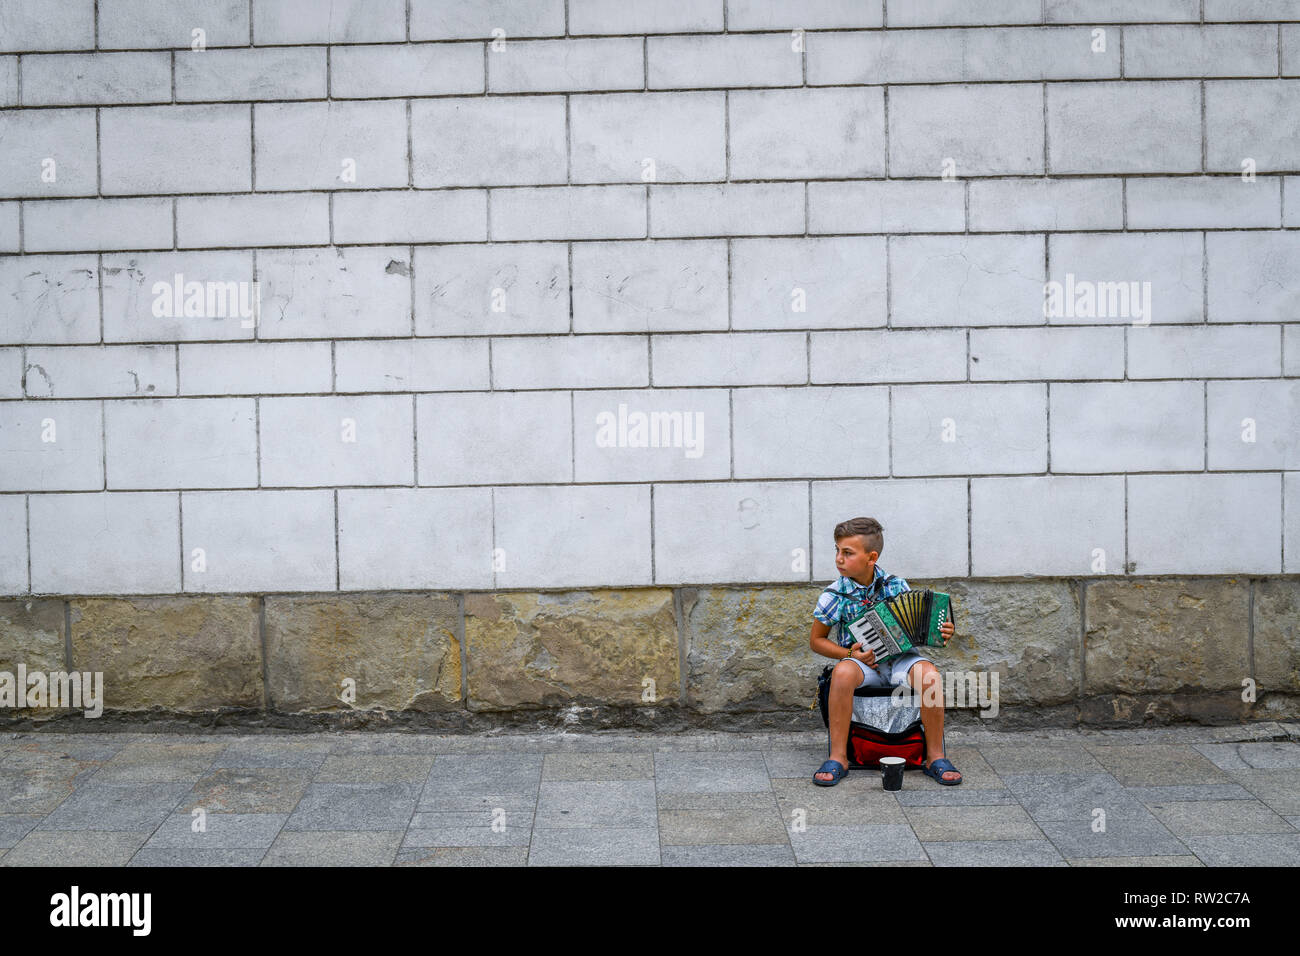 Le jeune enfant est assis et joue de l'accordéon musicien ambulant dans les rues de Krak-w, Lesser Poland Voivodeship, Pologne. Banque D'Images